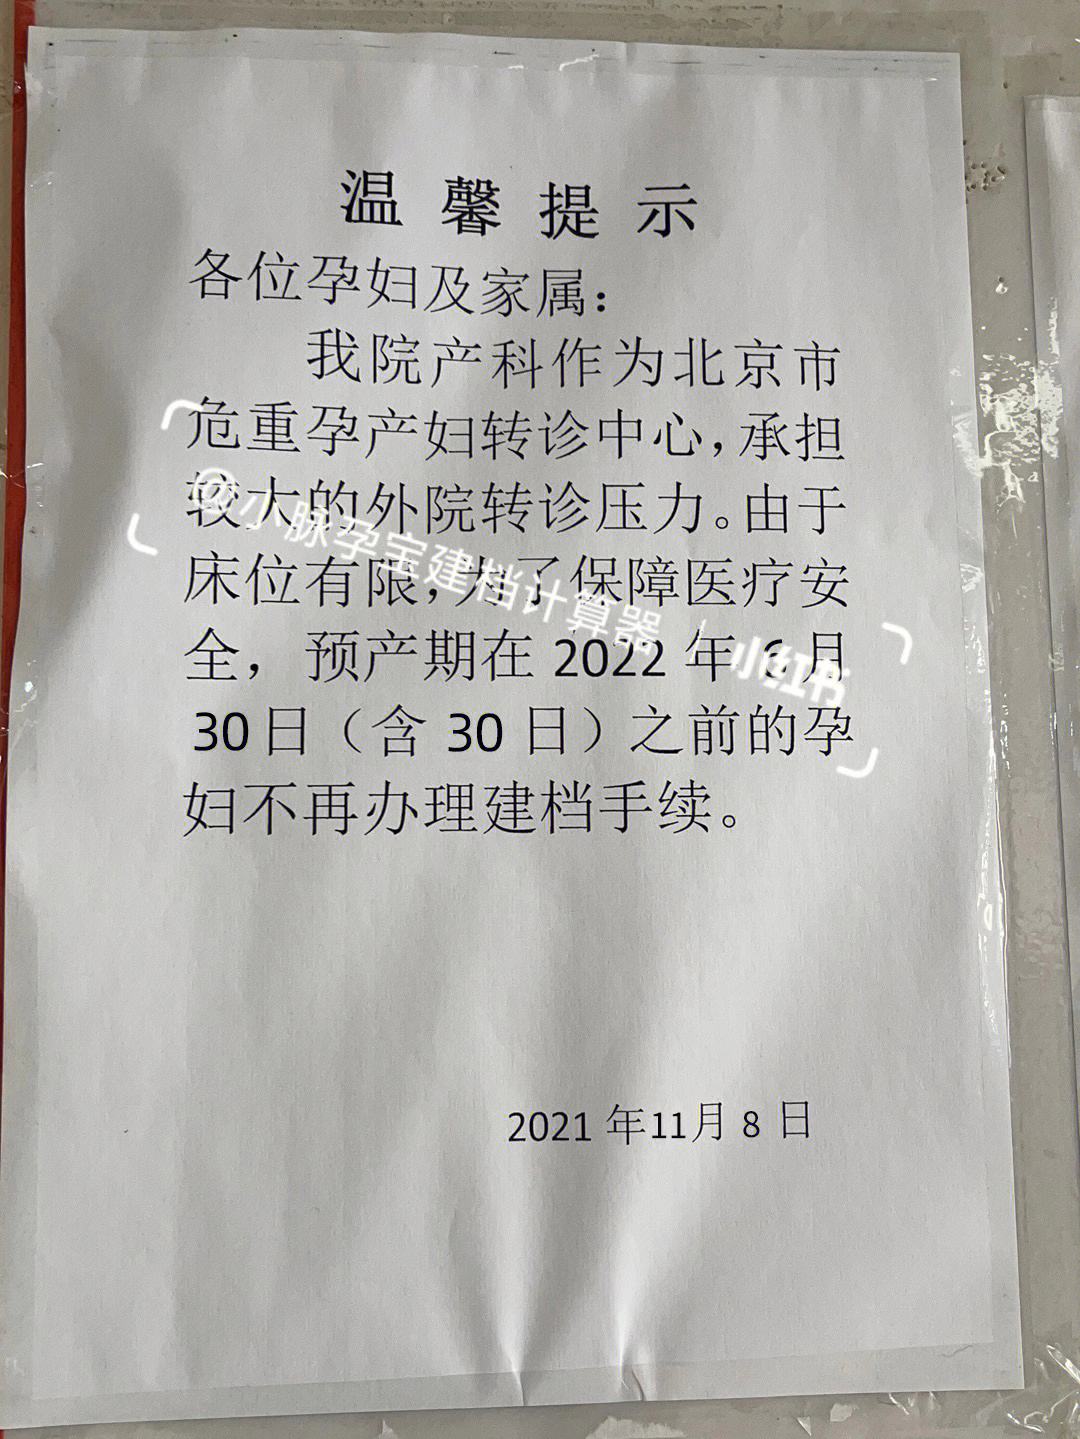 包含北京儿研所黄牛票贩子产科建档价格的词条